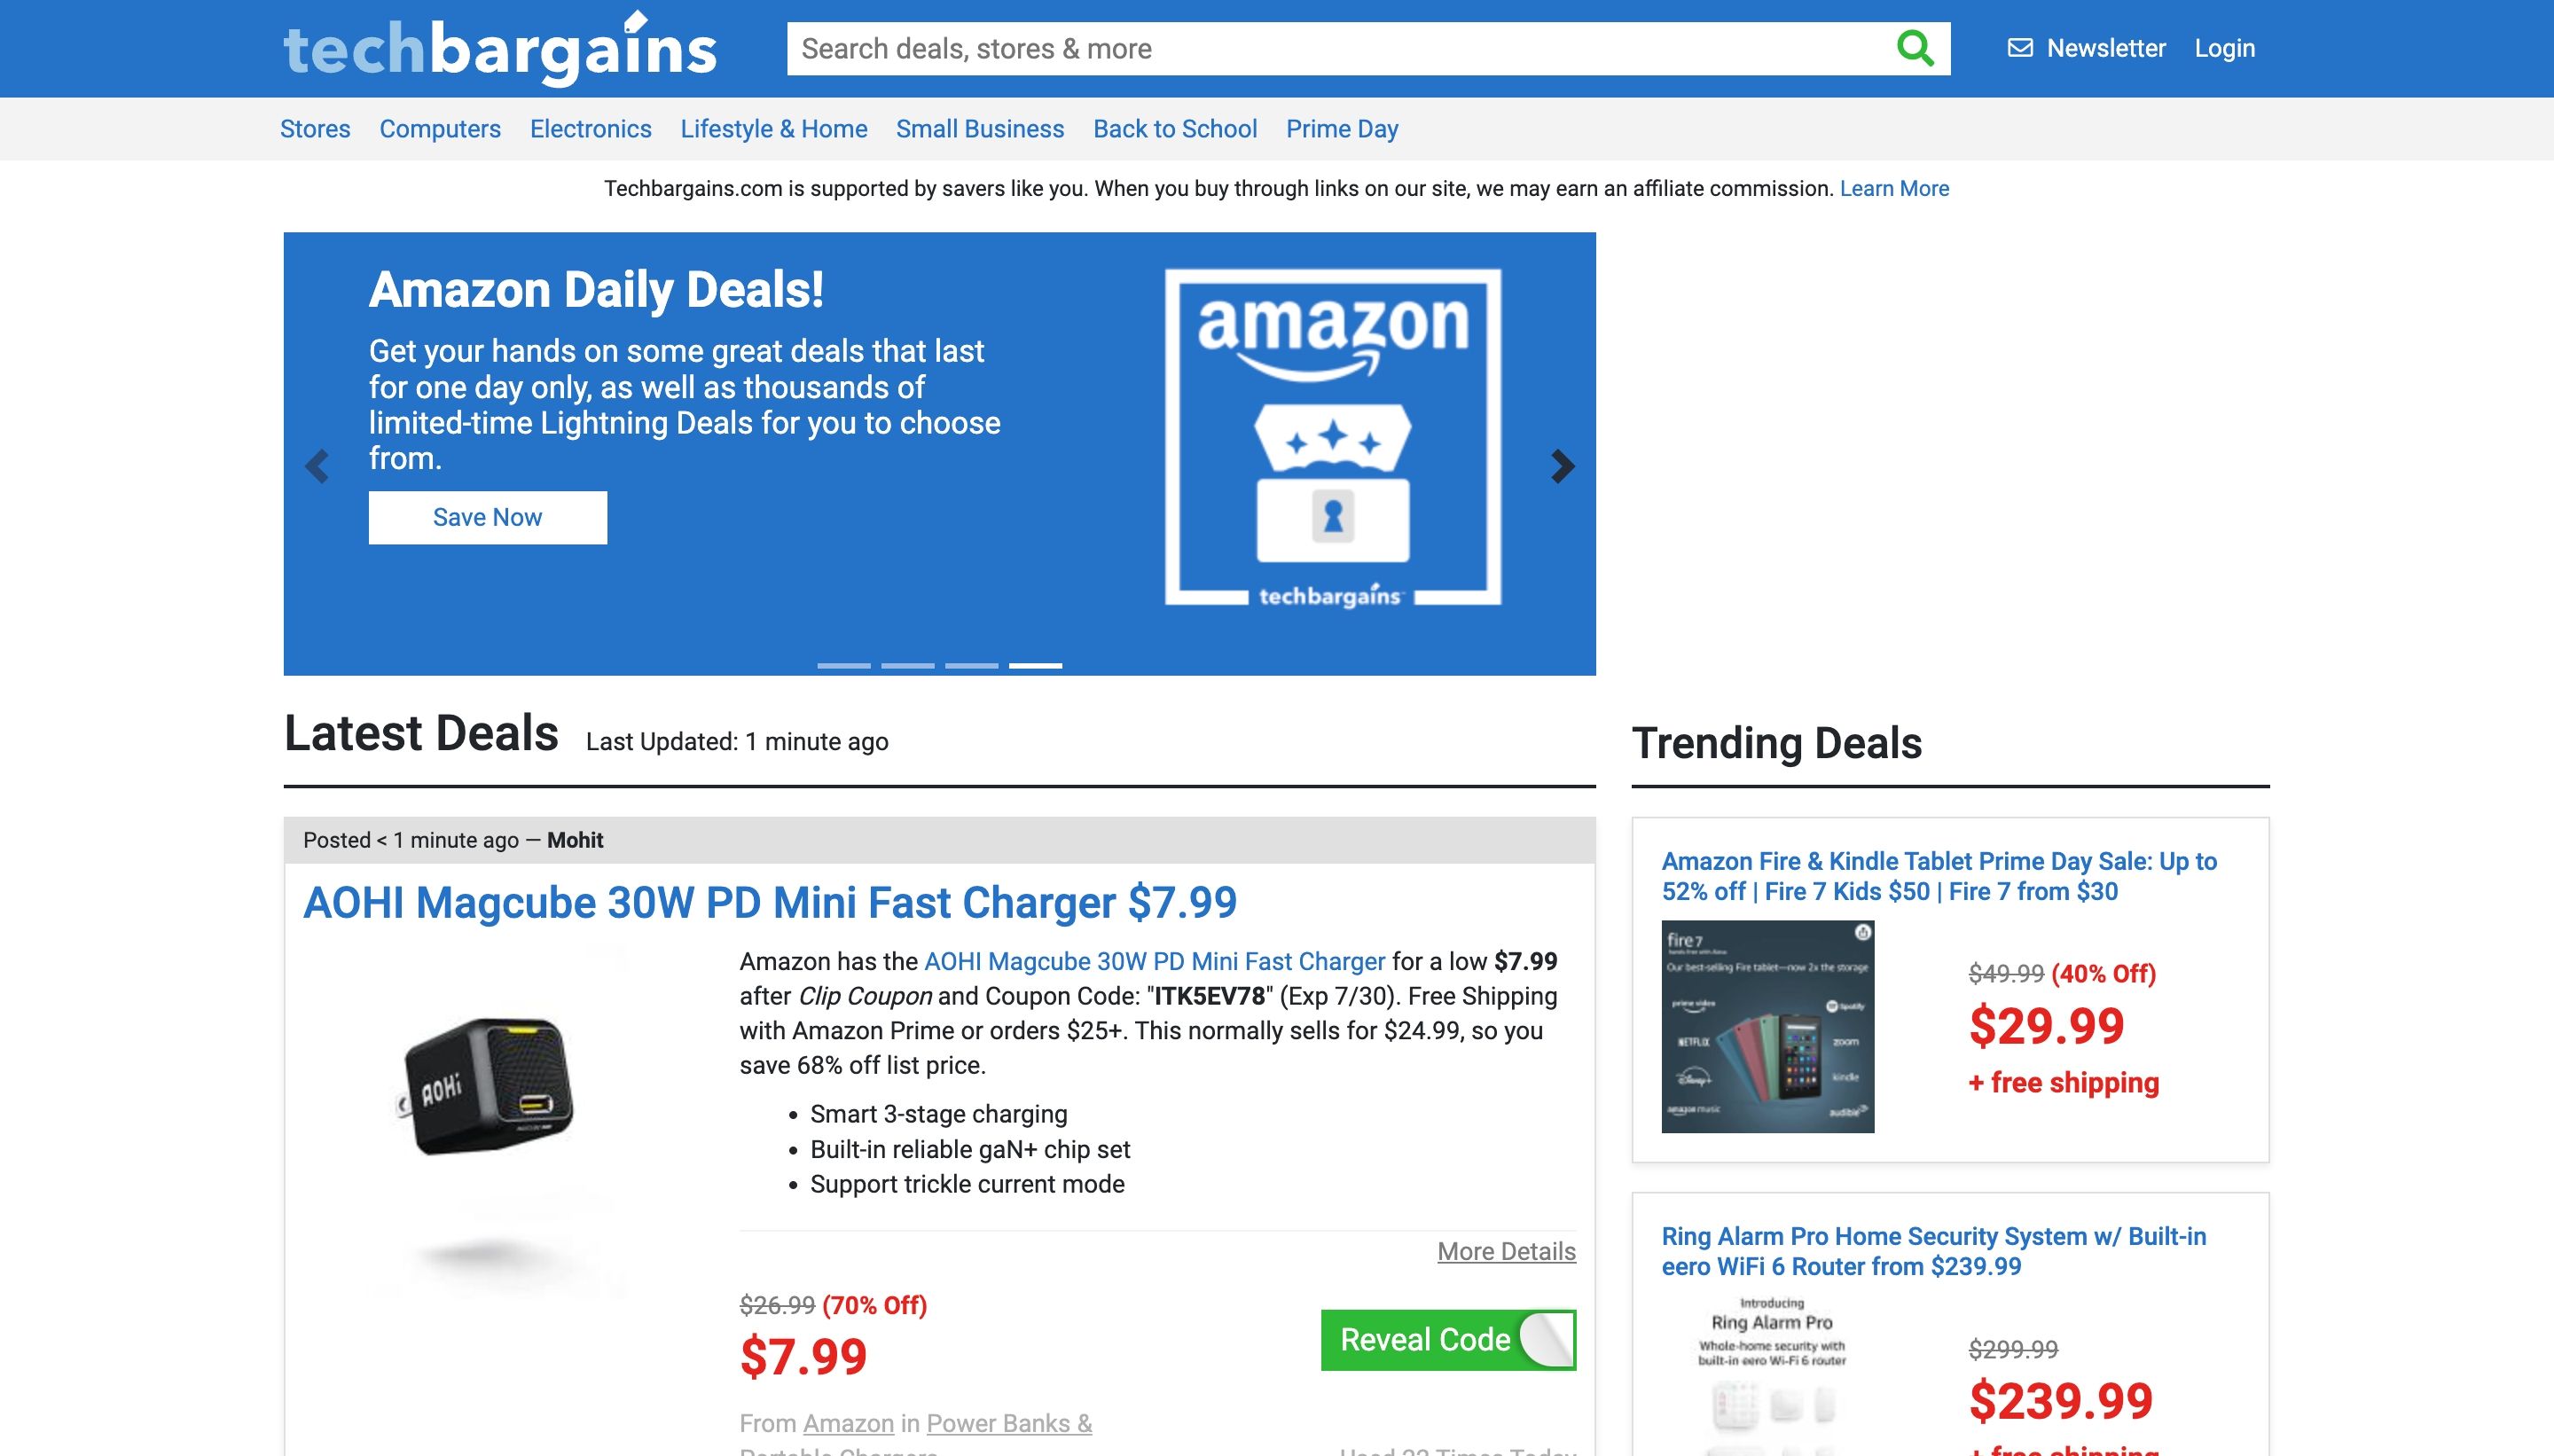 TechBargains discount finder website